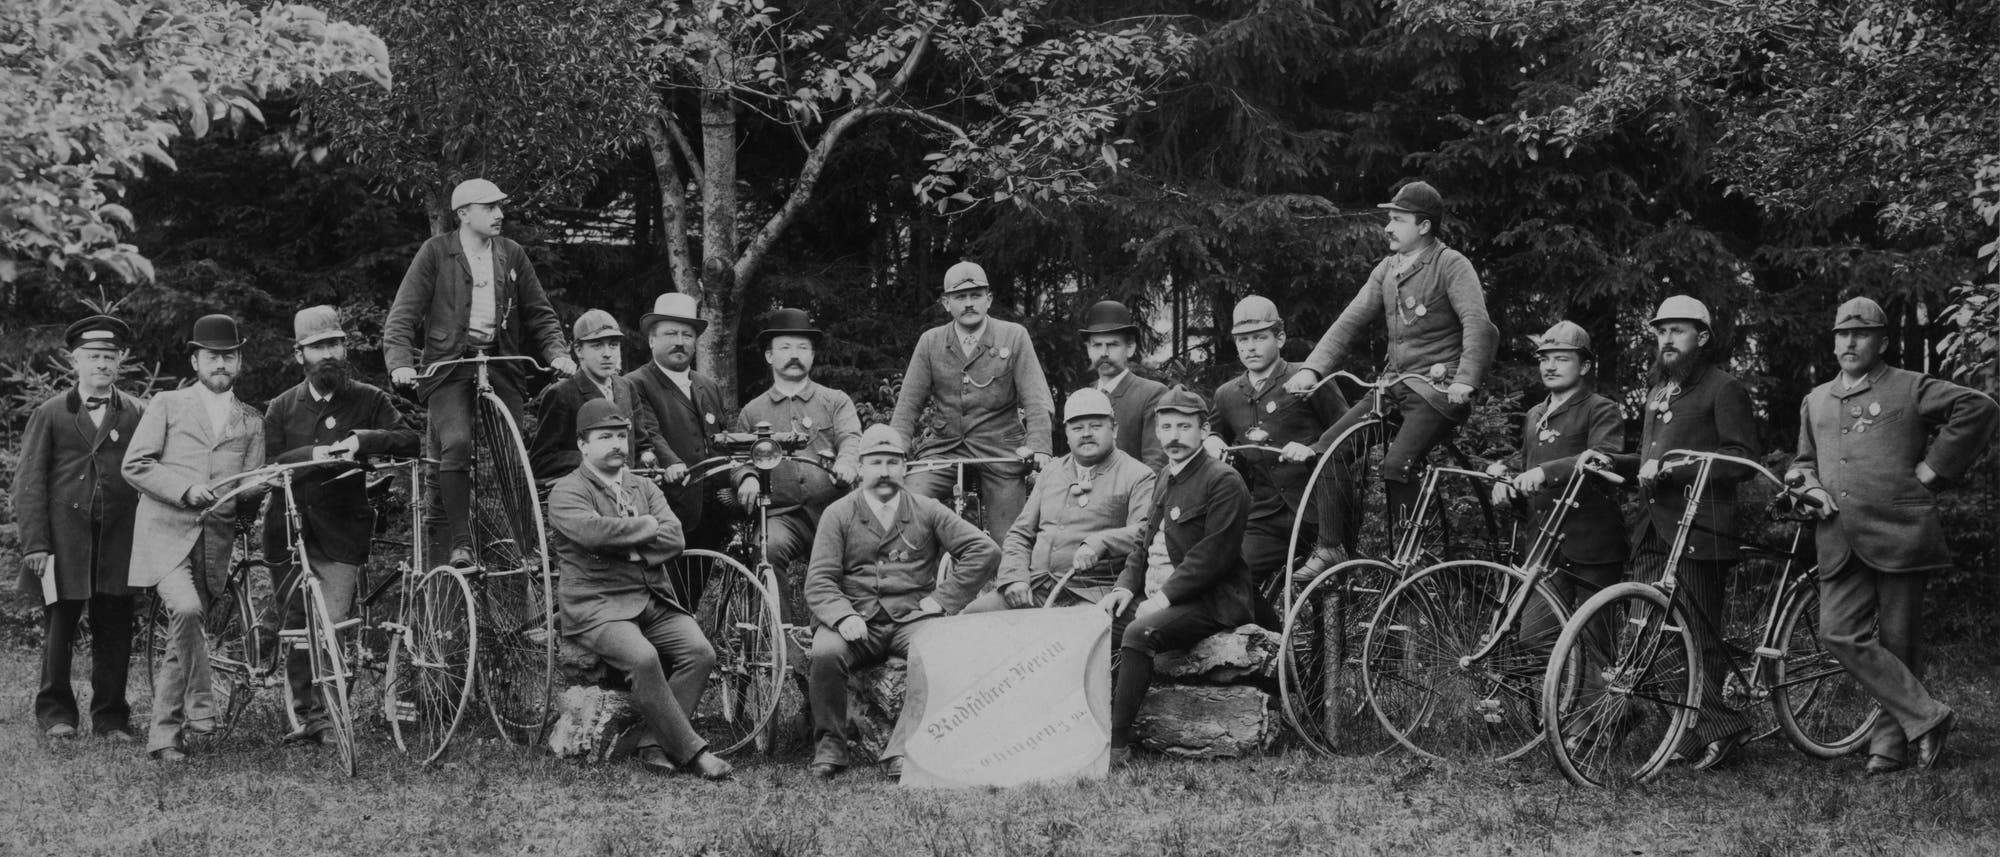 Von den Mitgliedern des "Radfahrer-Vereins Ehingen", die 1893 stolz für den Fotografen posieren, halten noch zwei dem Hochrad die Treue.